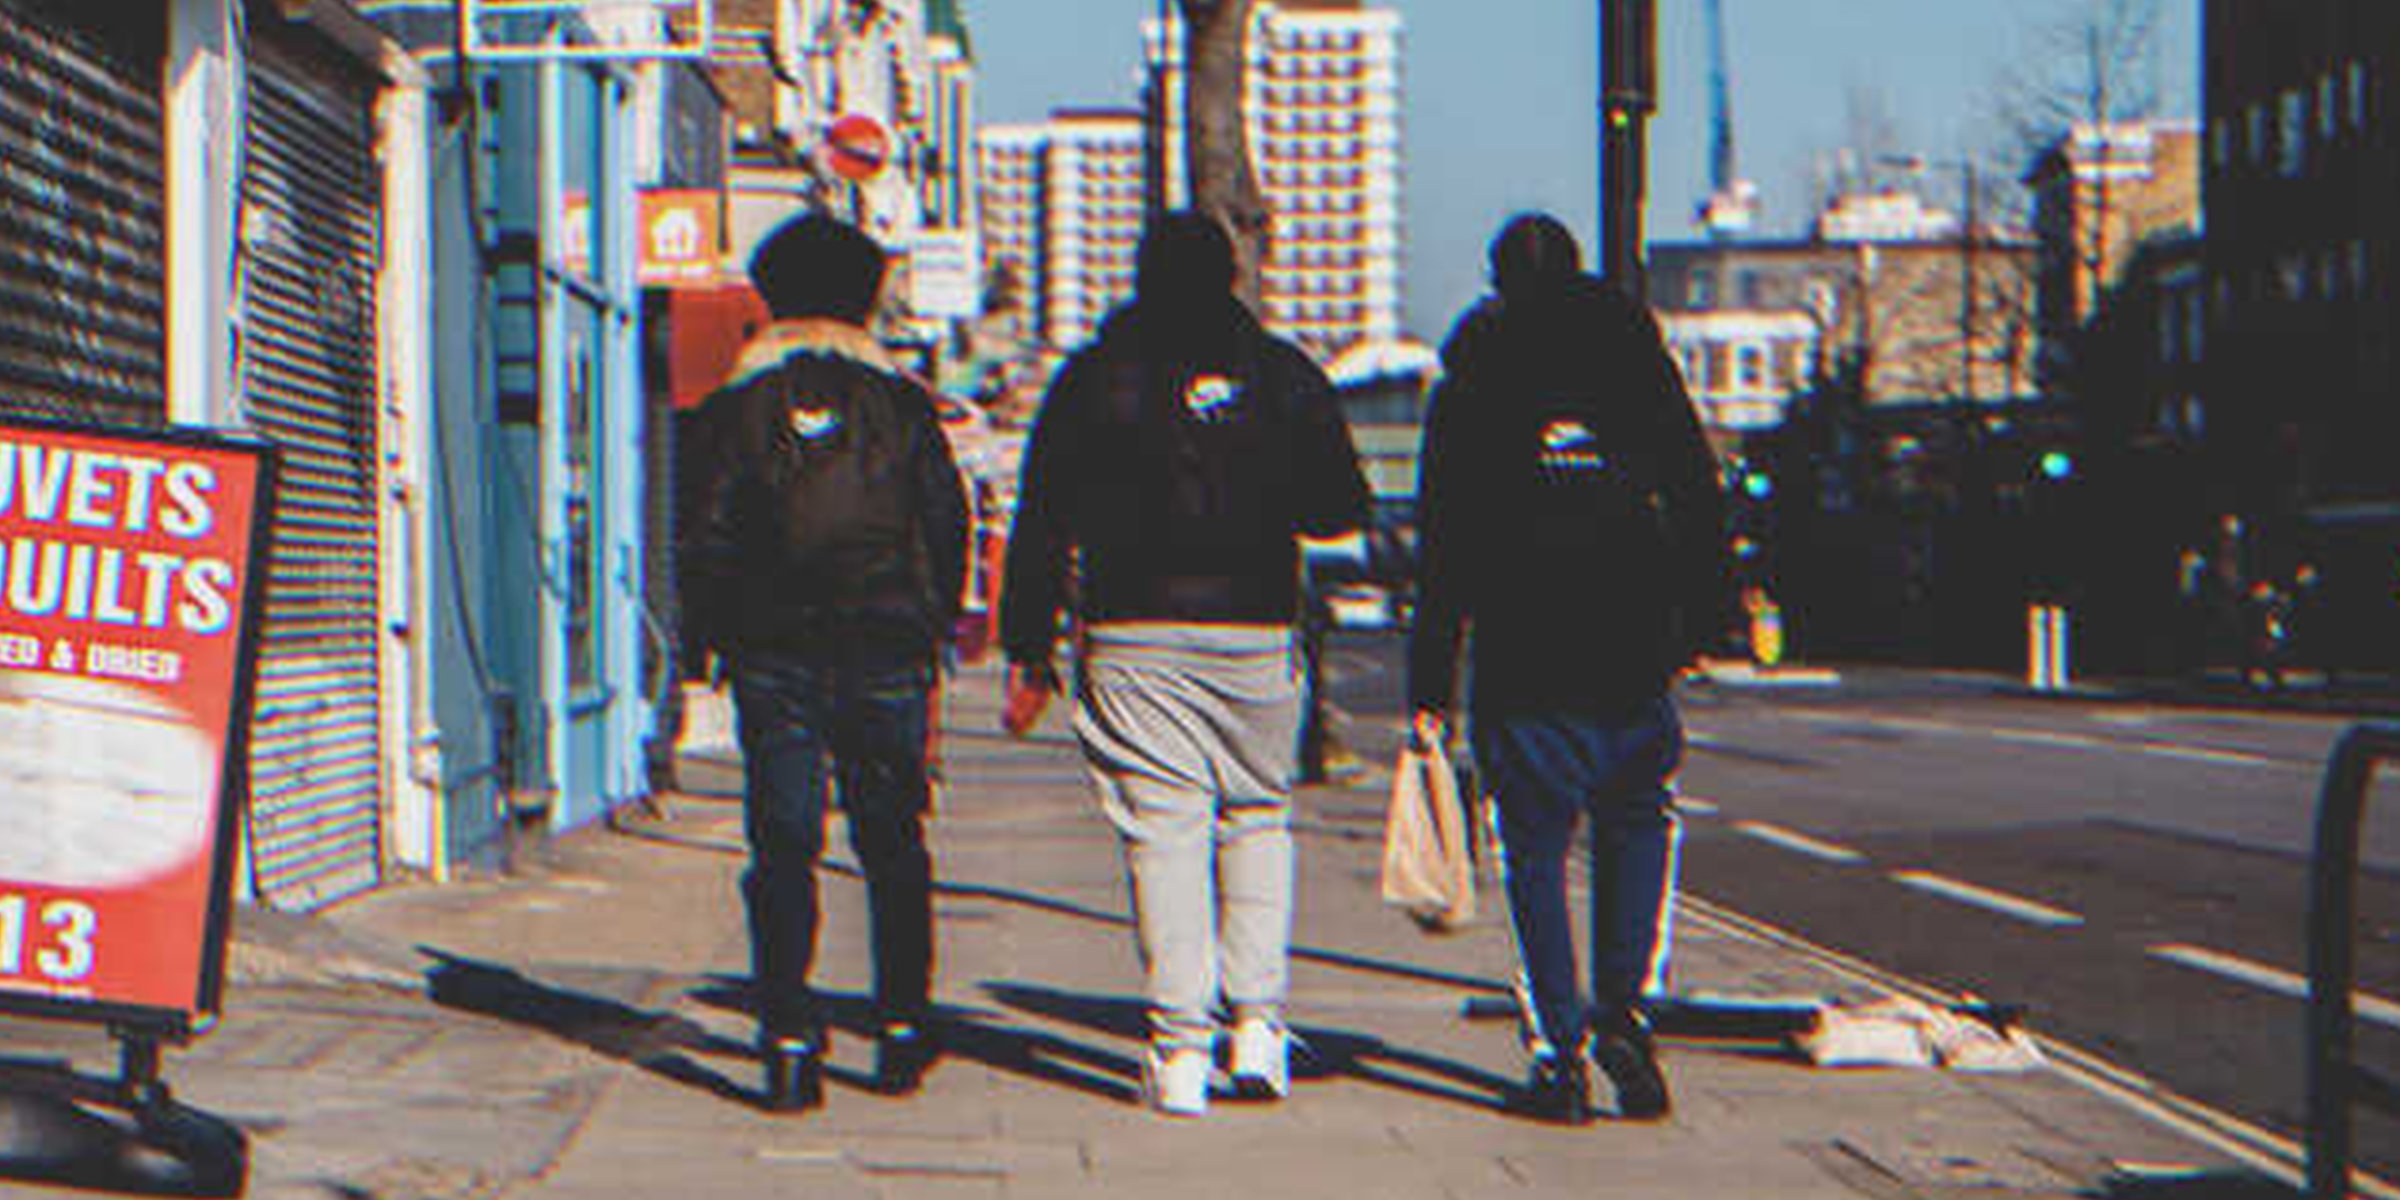 Tres jóvenes caminando por la calle | Foto: Shutterstock